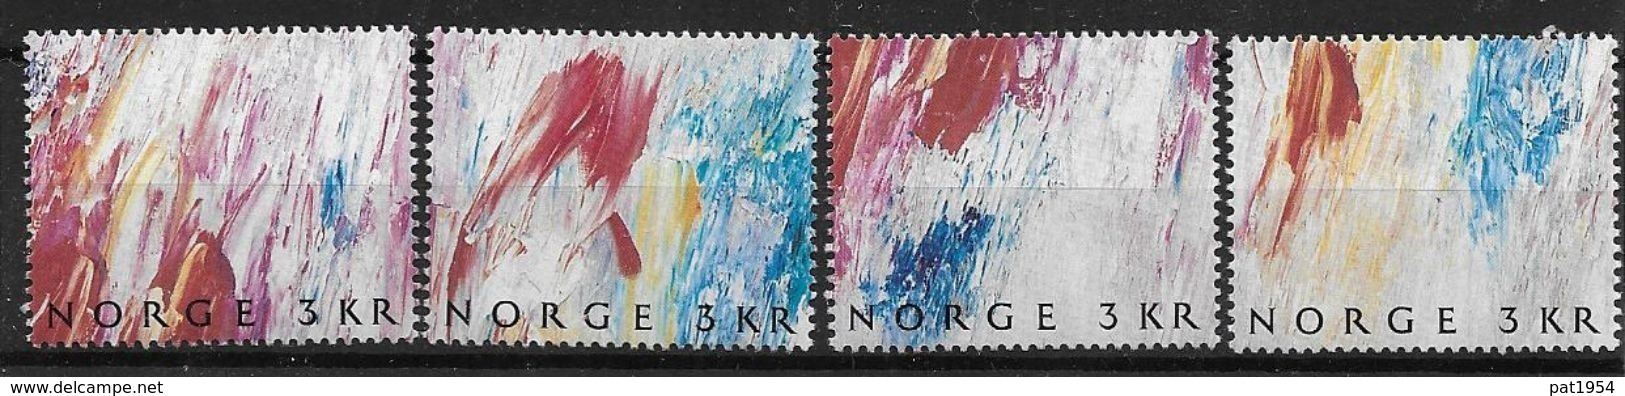 Norvège 1989 N° 984/987 Neufs Issus Du Bloc Journée Du Timbre Avec Peintures De Weidemann - Unused Stamps